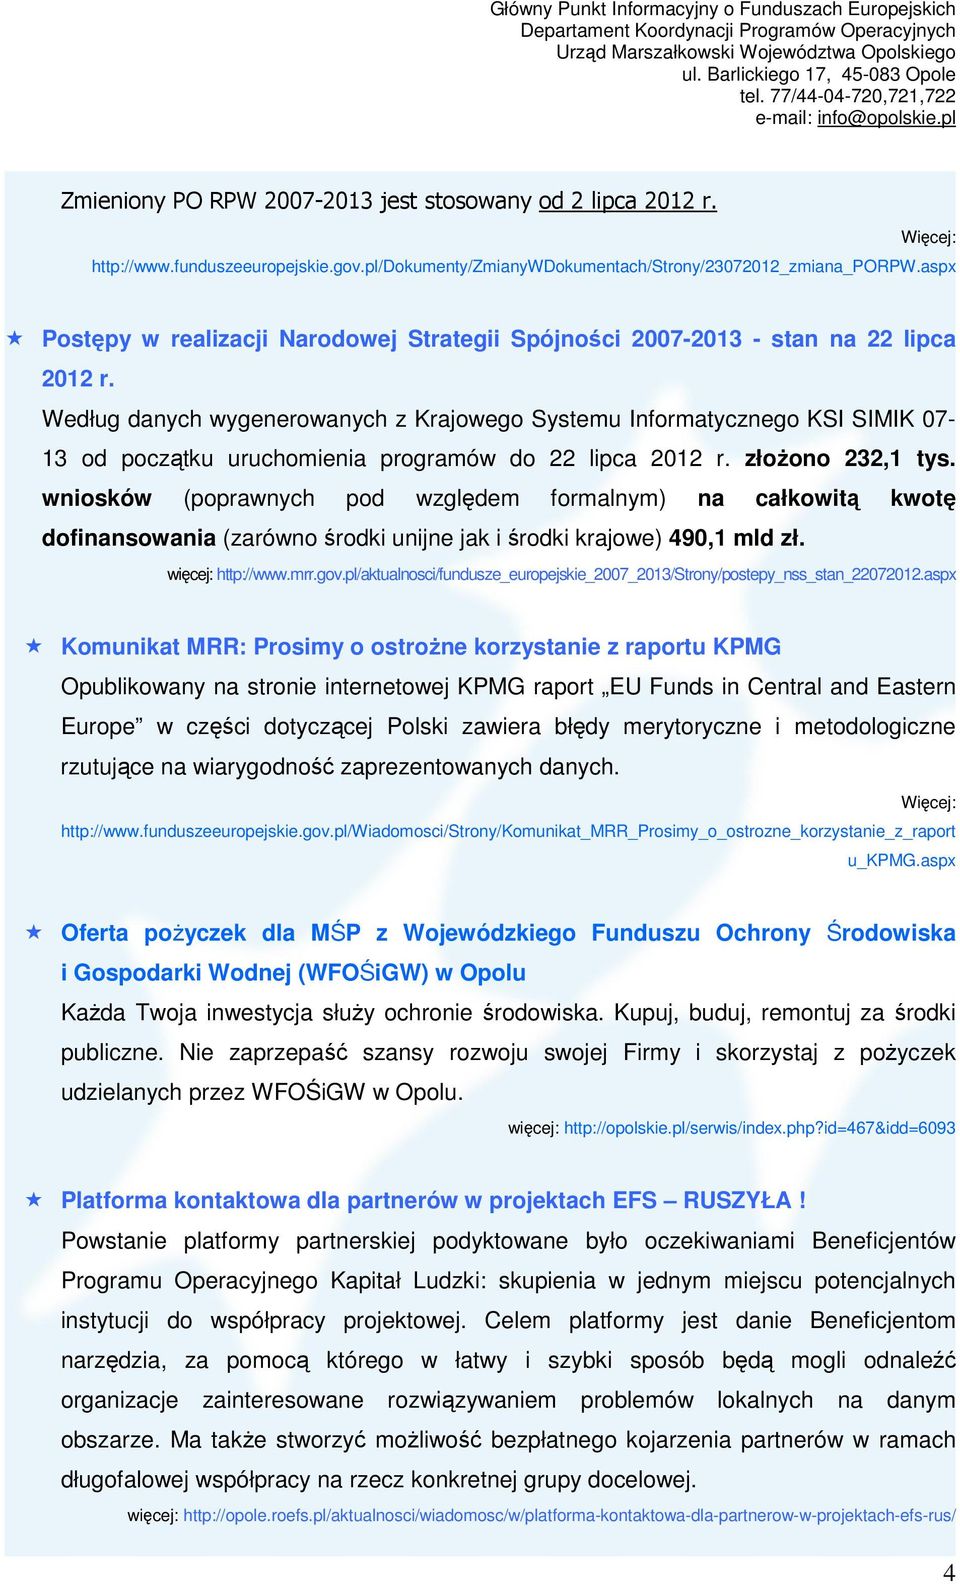 Według danych wygenerowanych z Krajowego Systemu Informatycznego KSI SIMIK 07-13 od początku uruchomienia programów do 22 lipca 2012 r. złoŝono 232,1 tys.